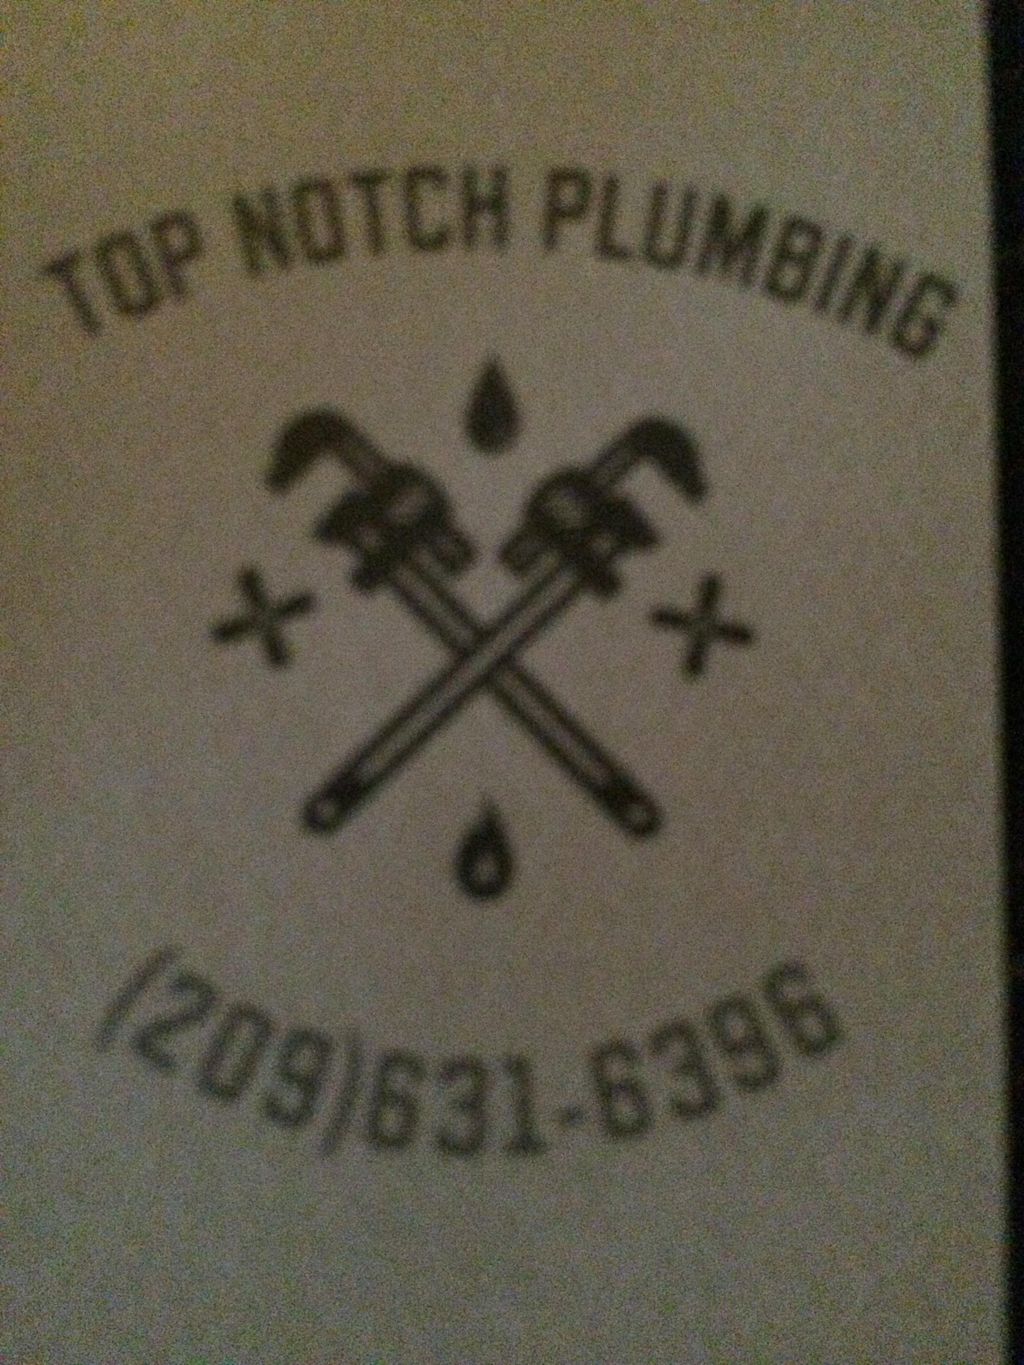 Top Notch Plumbing